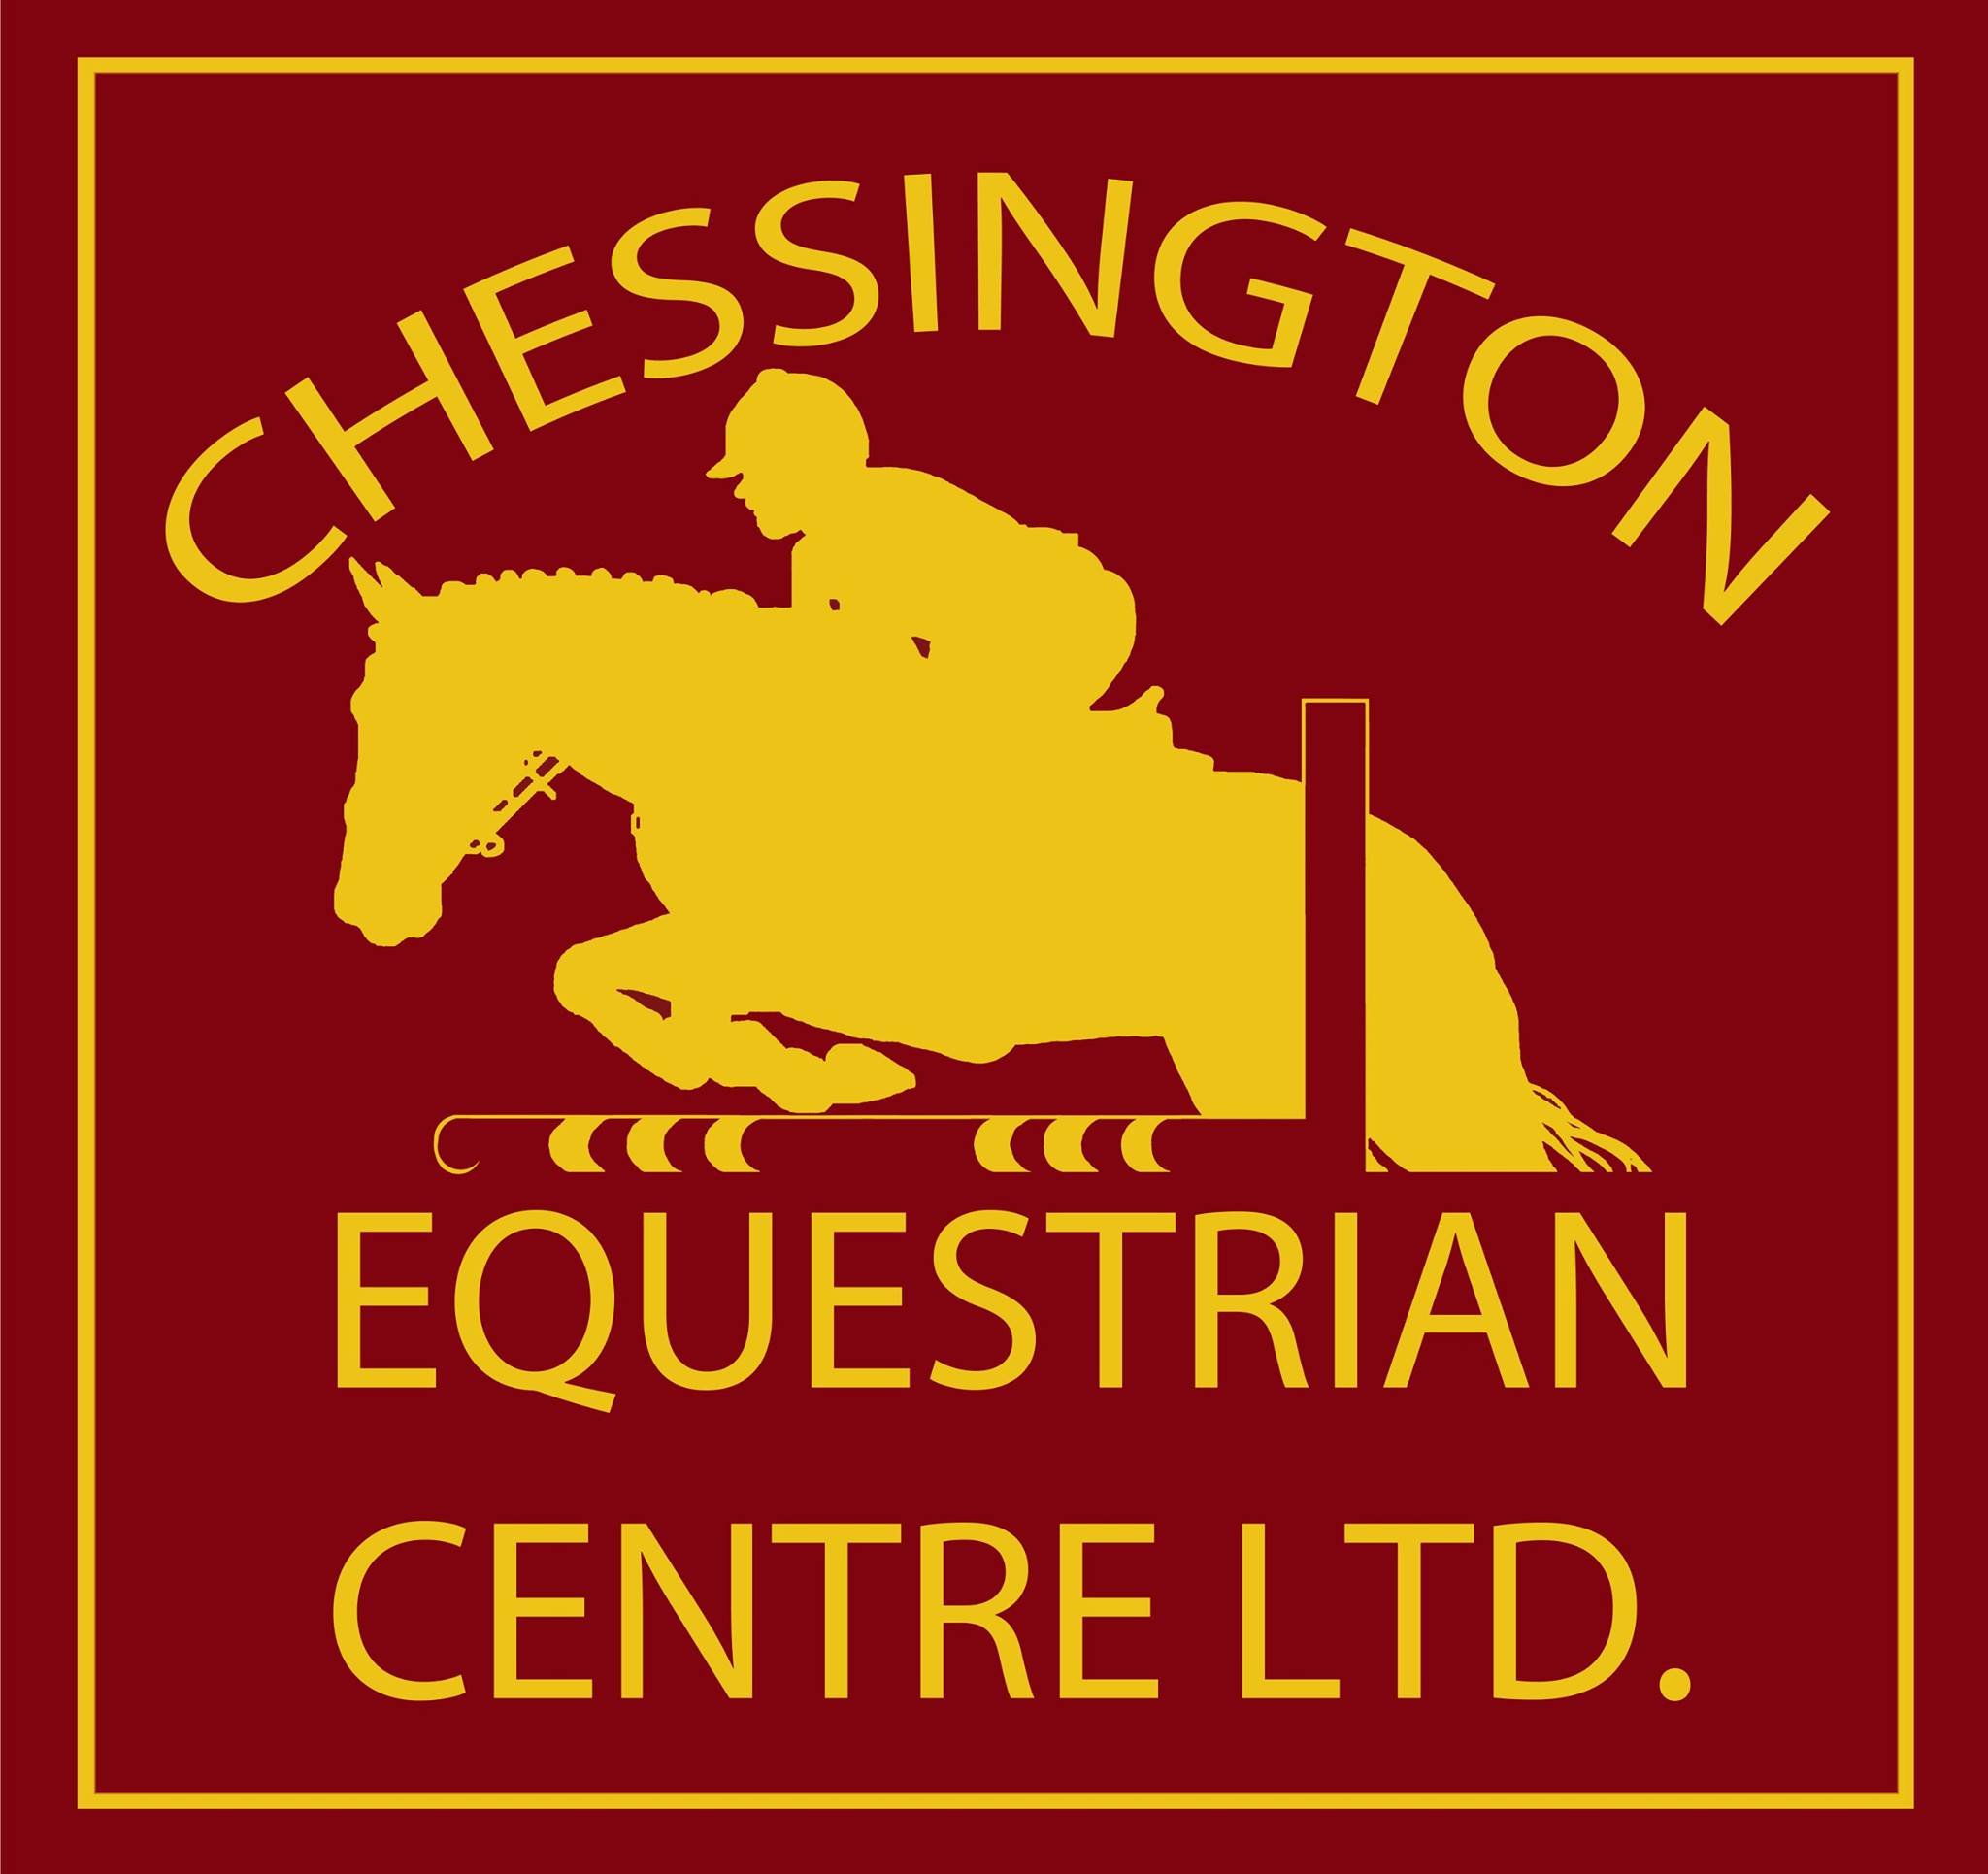 Chessington Equestrian Centre logo